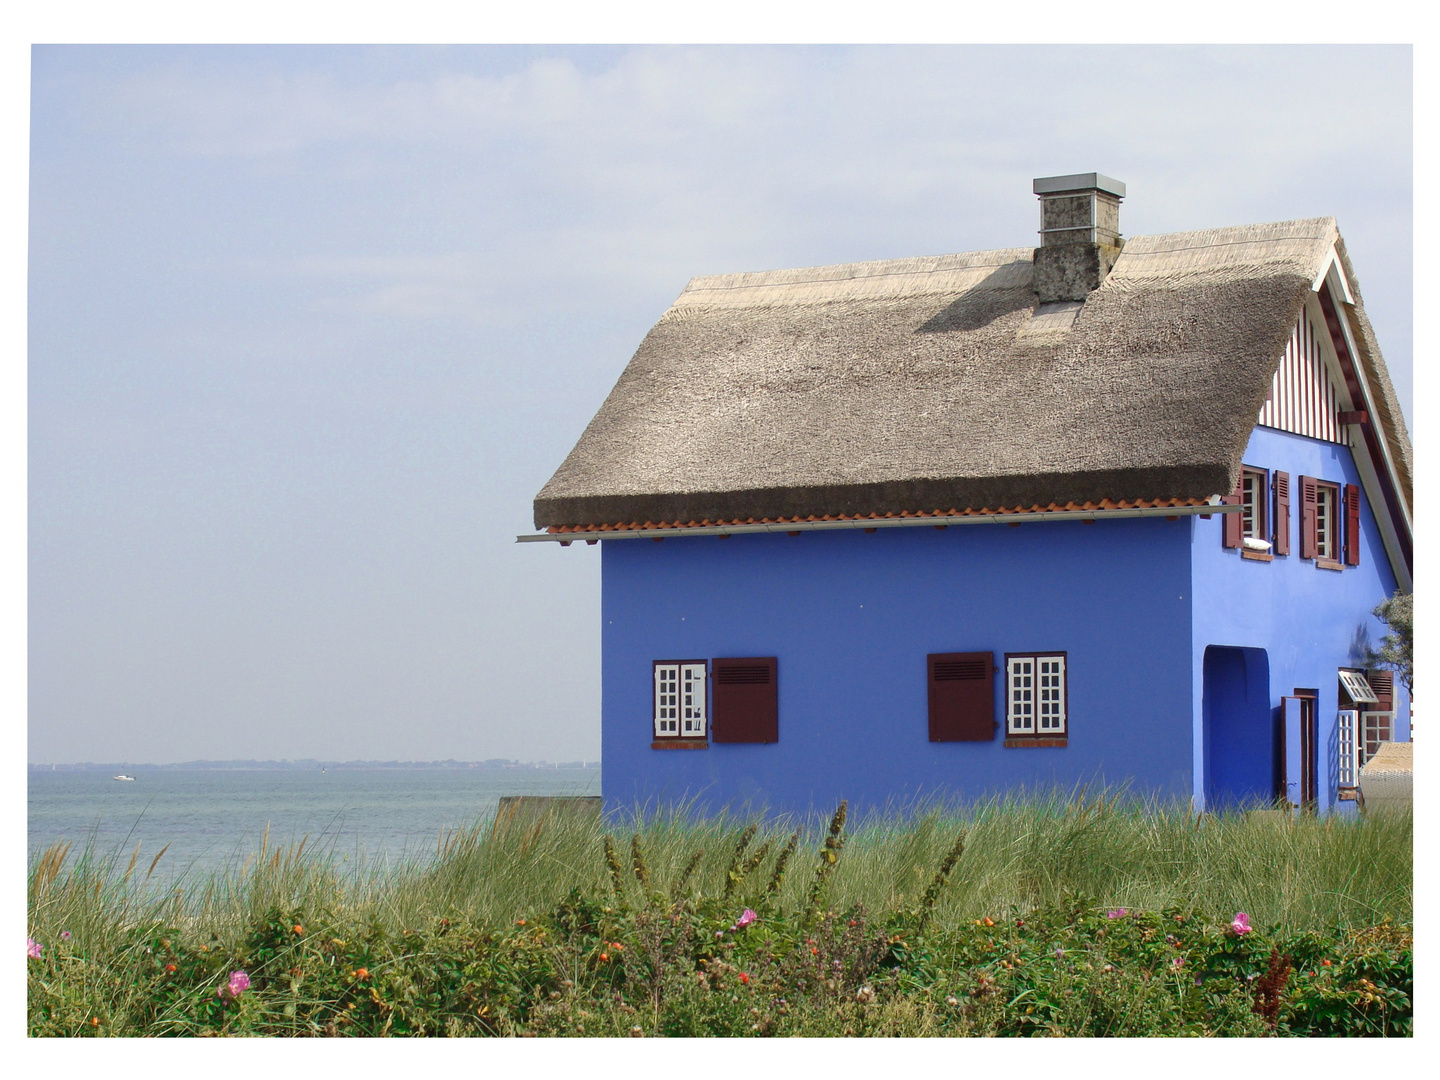 Blaues Haus